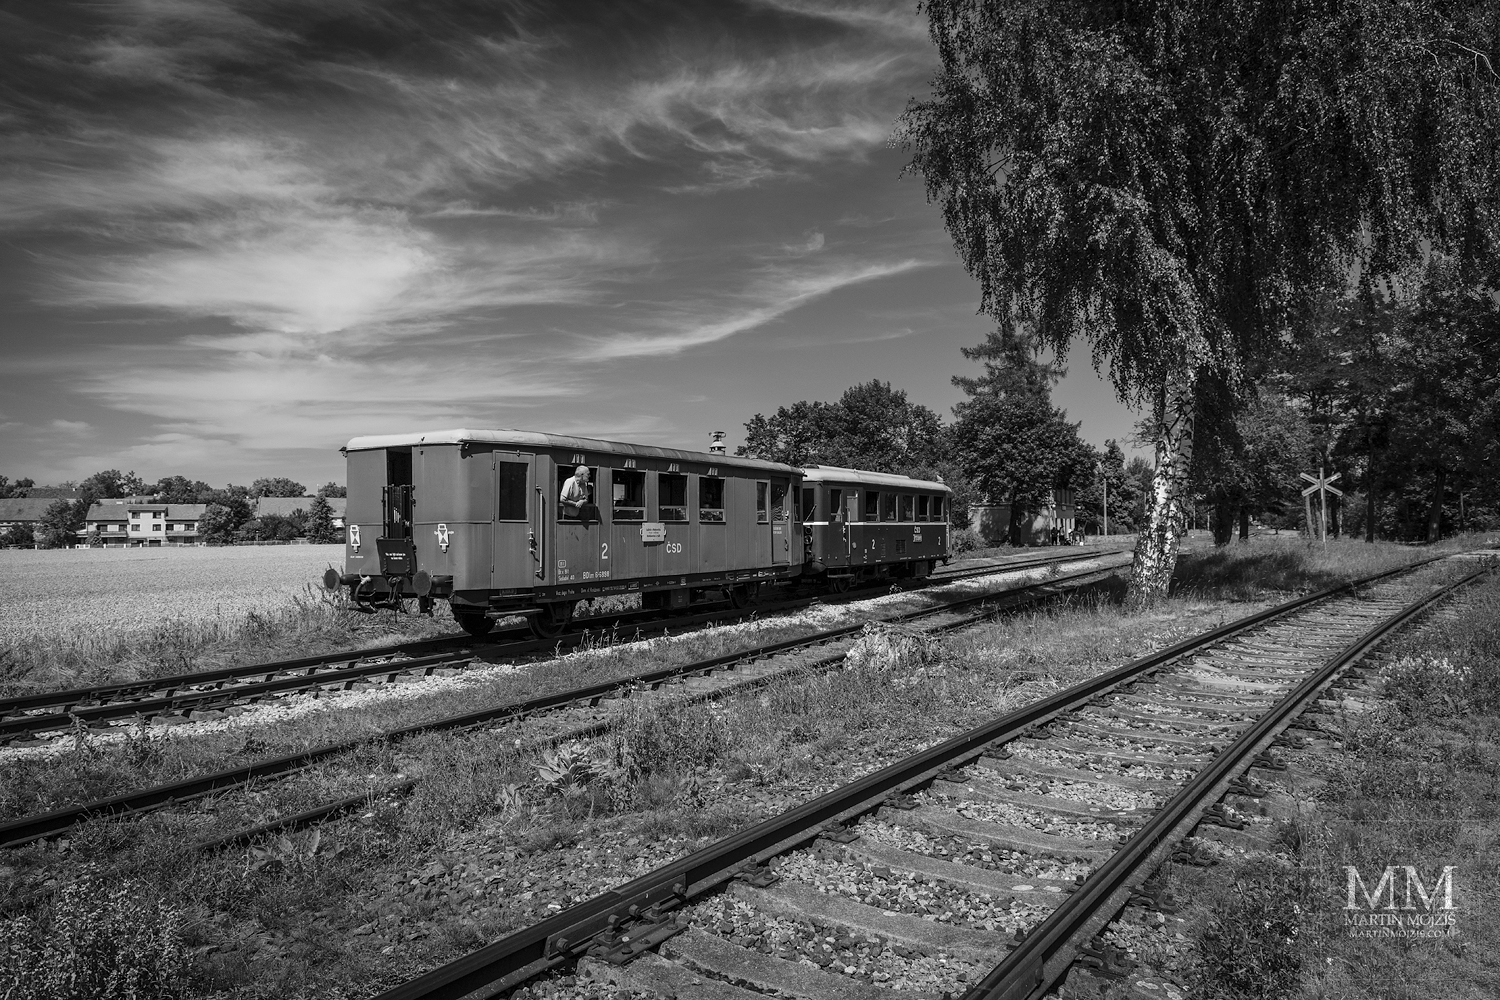 Umělecká černobílá velkoformátová fotografie s názvem Do stanice pomaleji. Fotograf Martin Mojžíš.